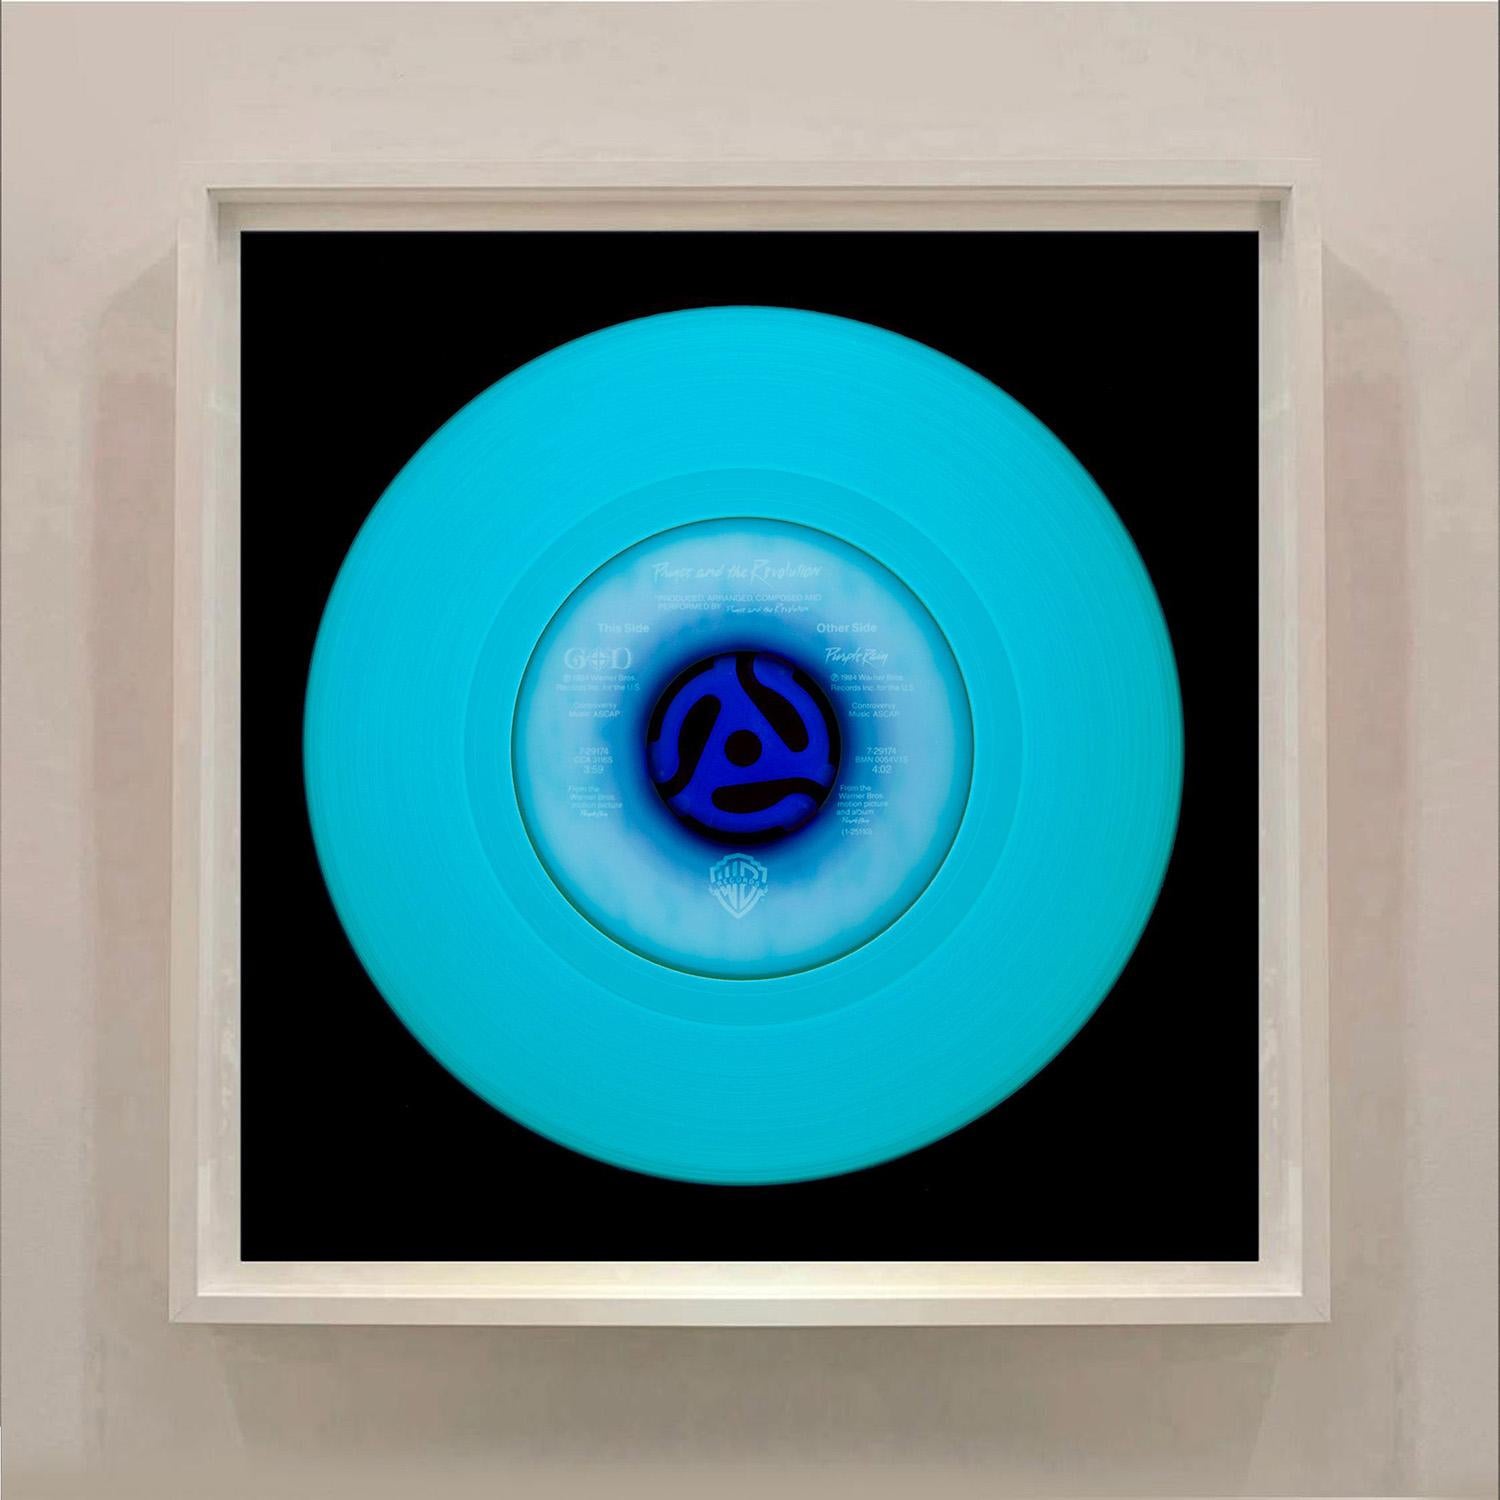 Other Side (Blue), aus der Heidler & Heeps Vinyl Collection'S.
Die renommierten zeitgenössischen Fotografen Richard Heeps und Natasha Heidler haben für diese wunderschöne, faszinierende Kollektion zusammengearbeitet. Ein Fest der Schallplatte und